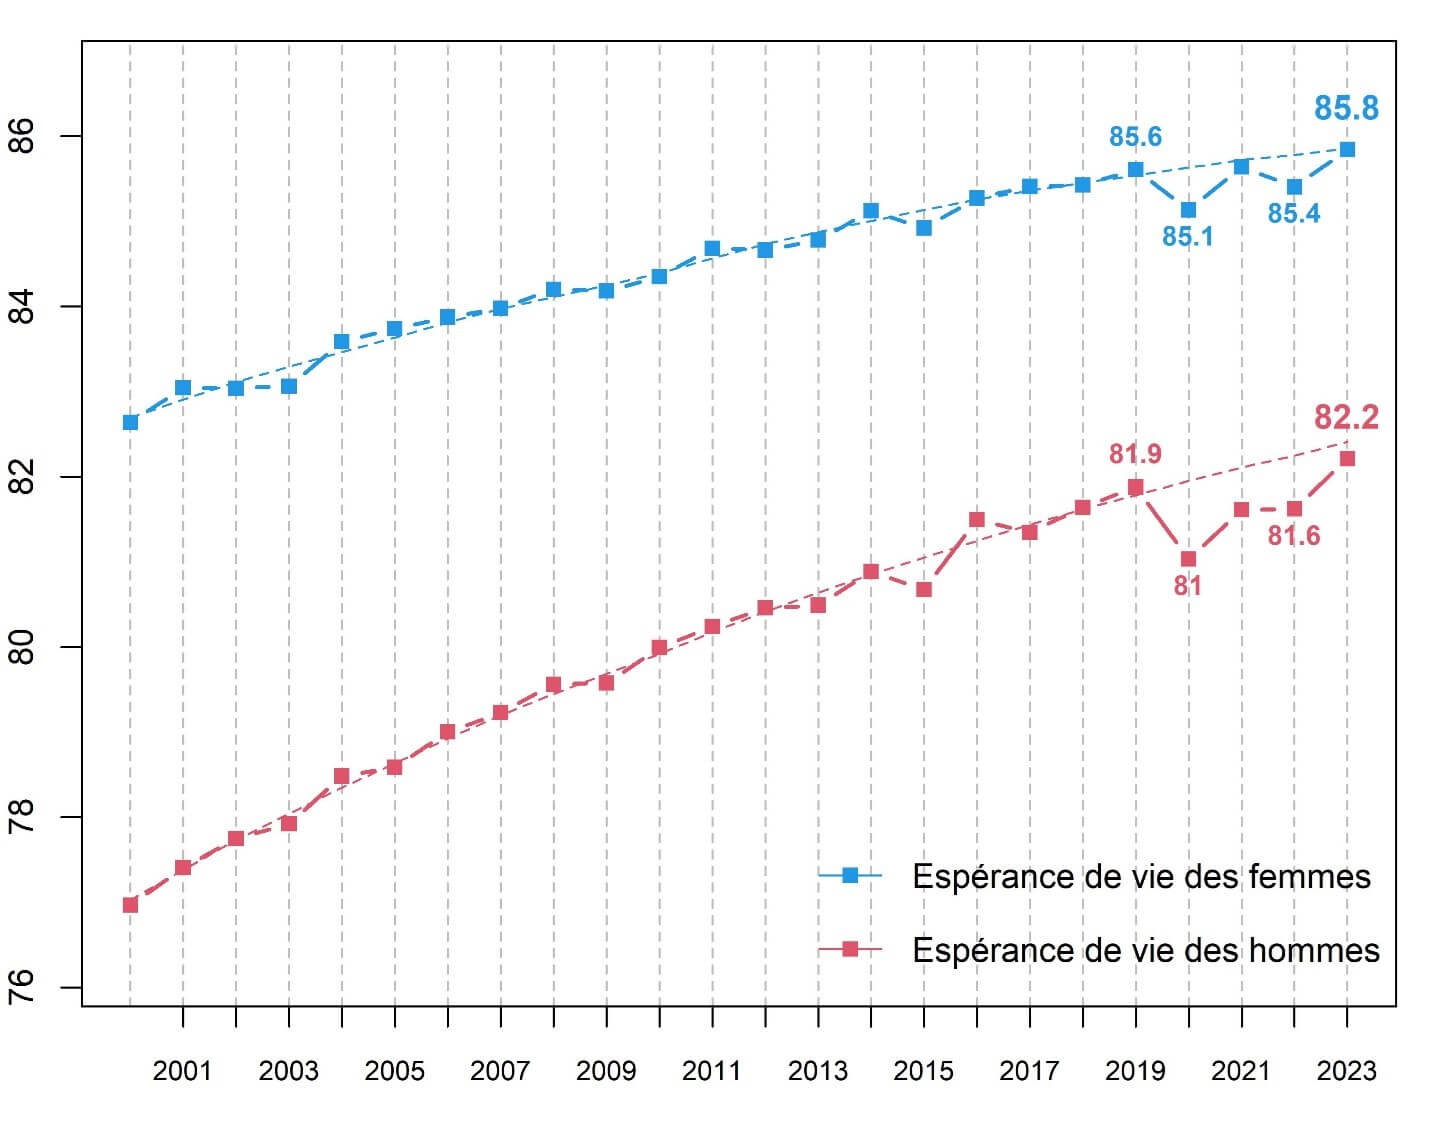 Diagramme des espérances de vie des femmes et des hommes en Suisse de 2000 à 2023.